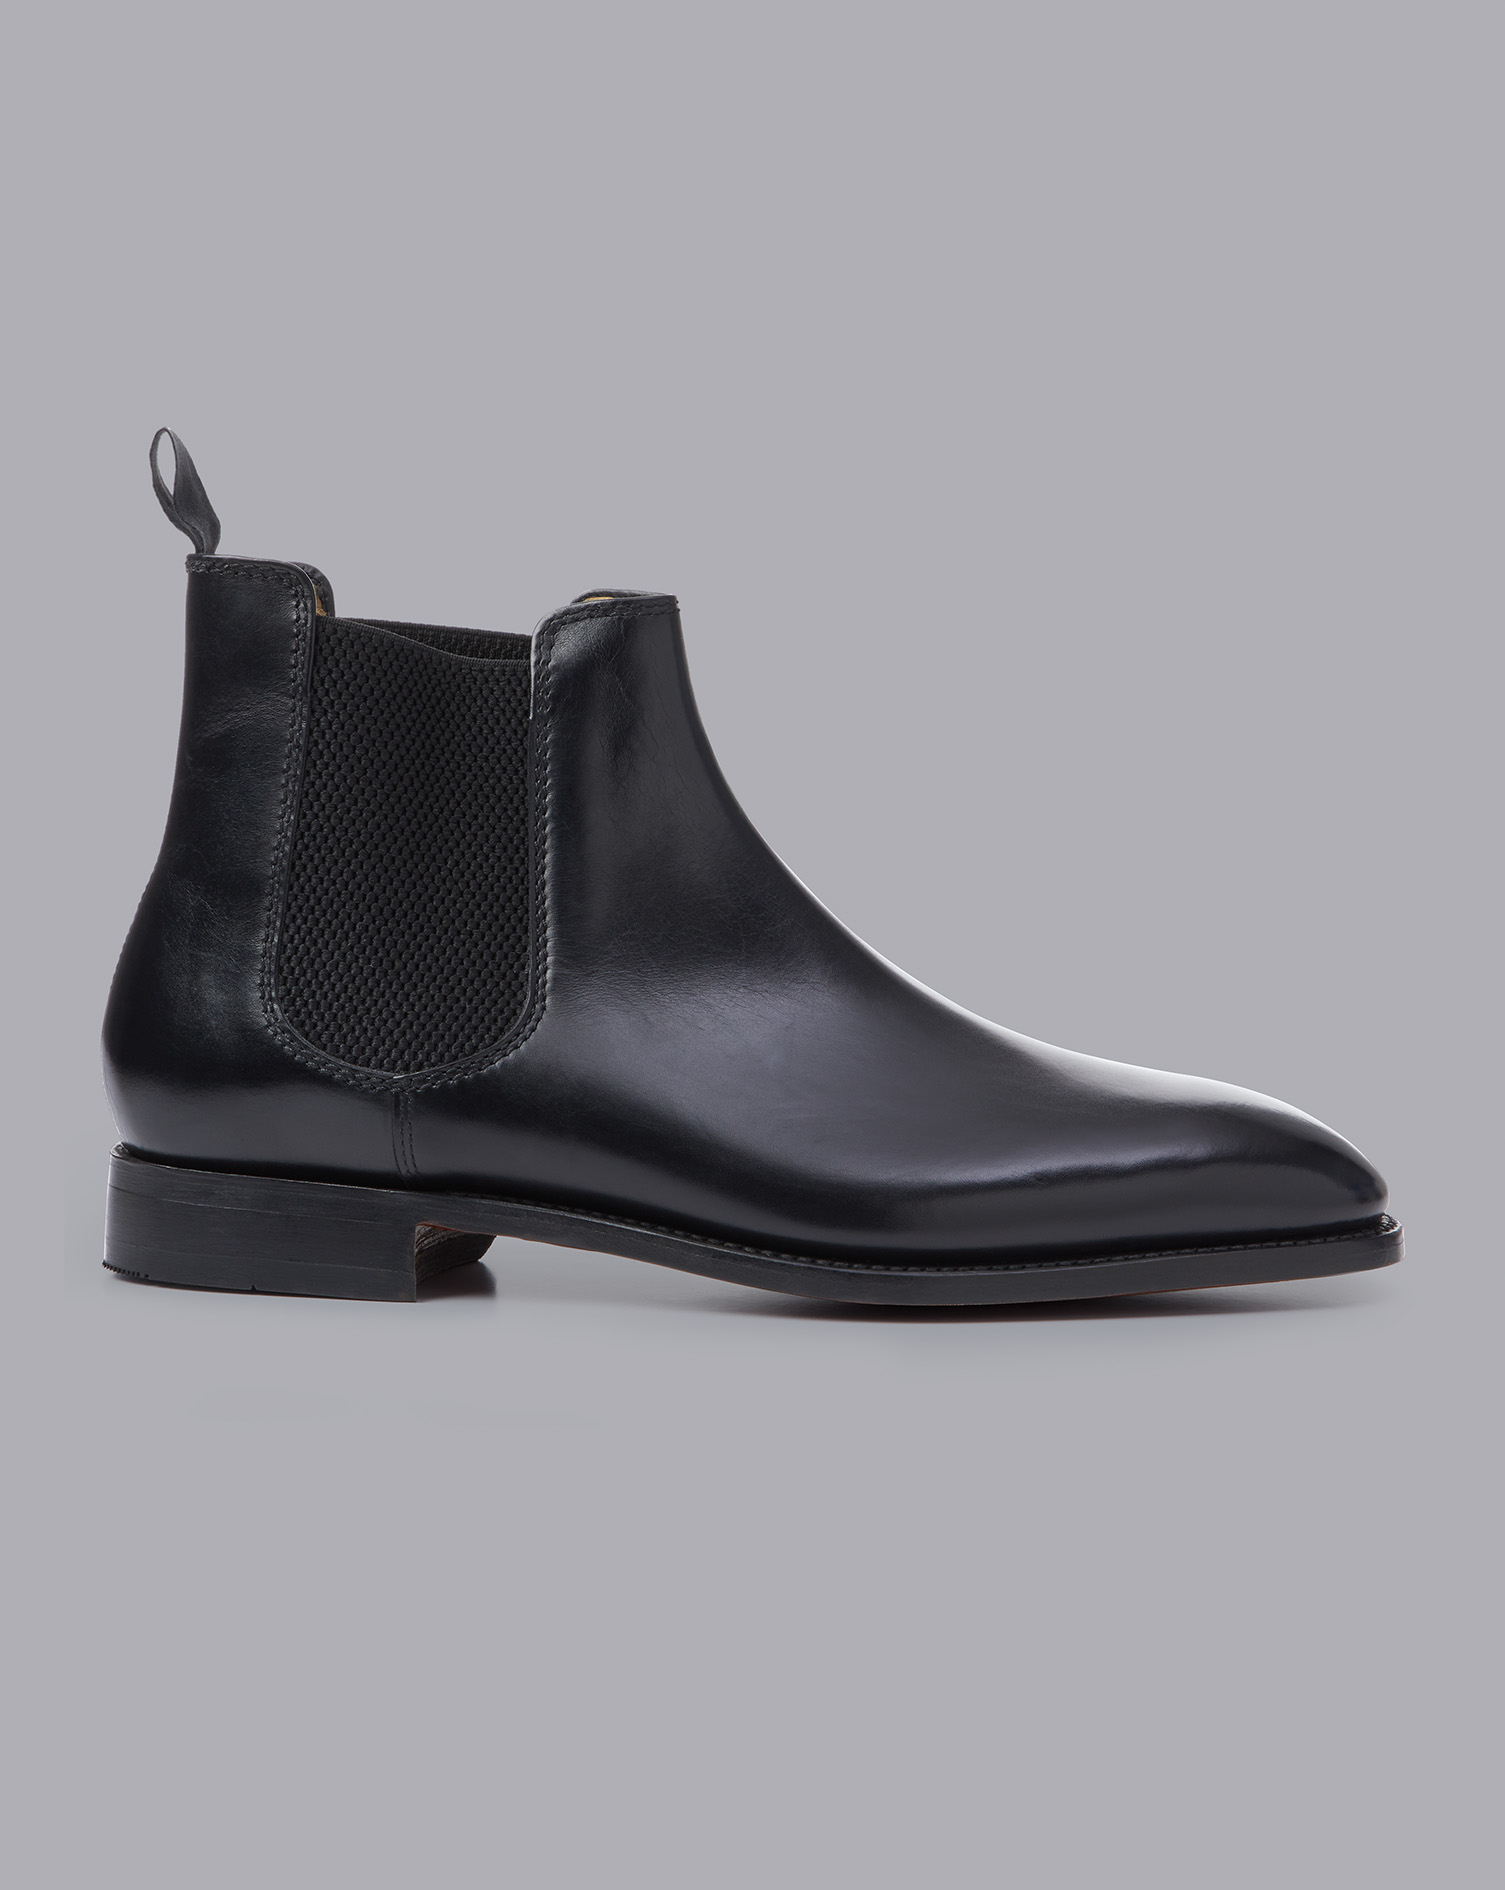 Men's Charles Tyrwhitt Chelsea Boots - Black Size 11 Leather
